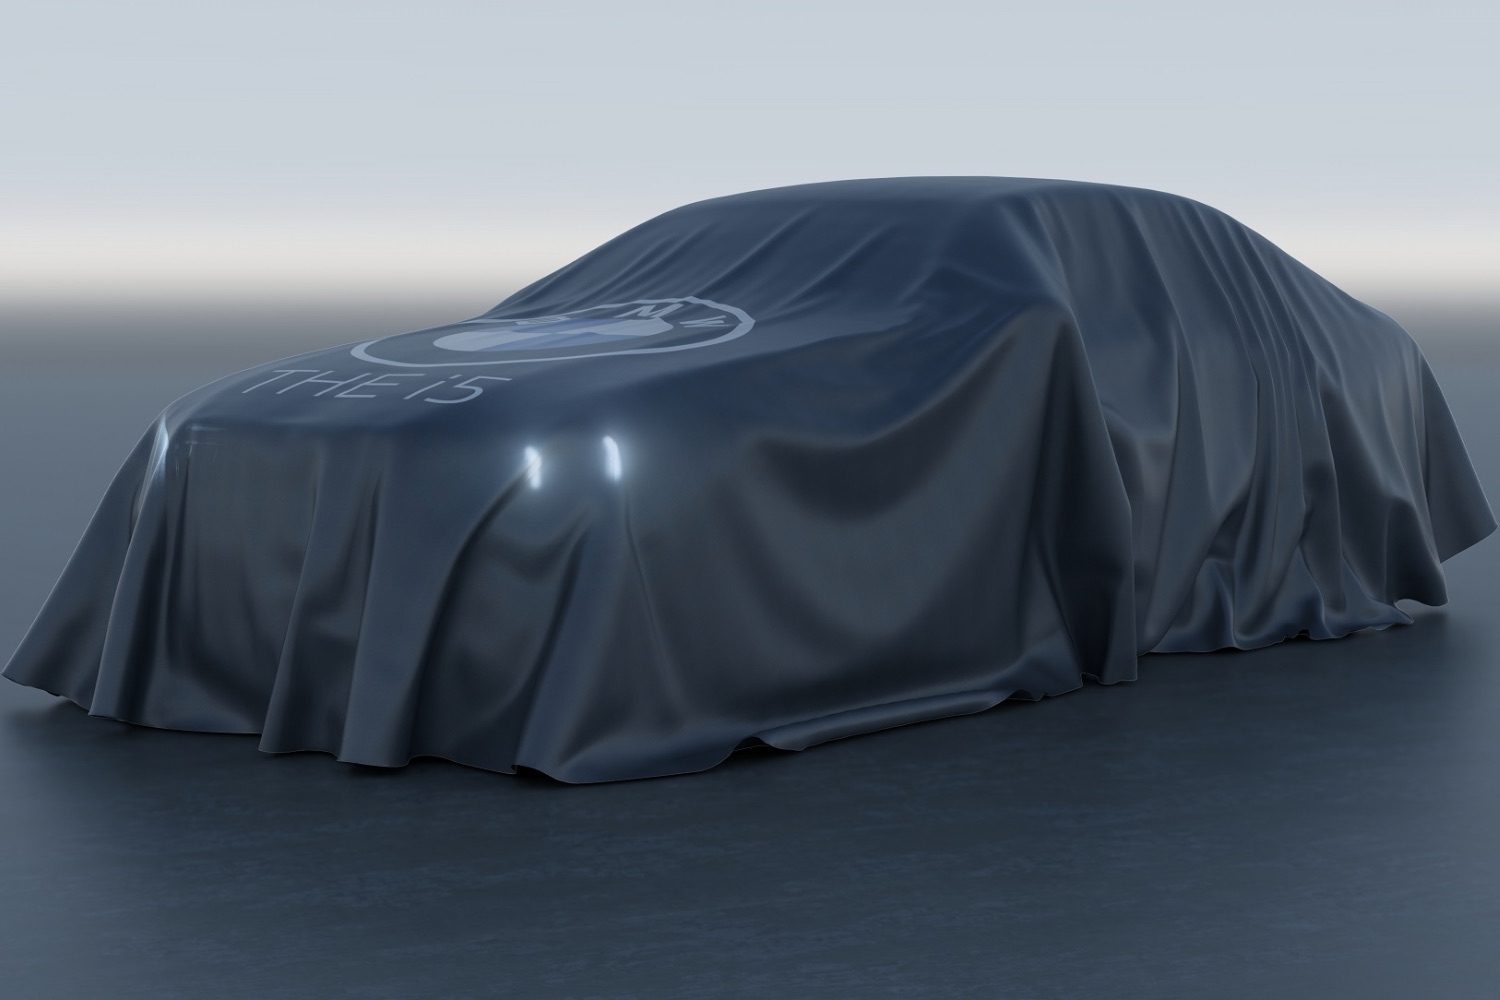 BMW preps new electric i5